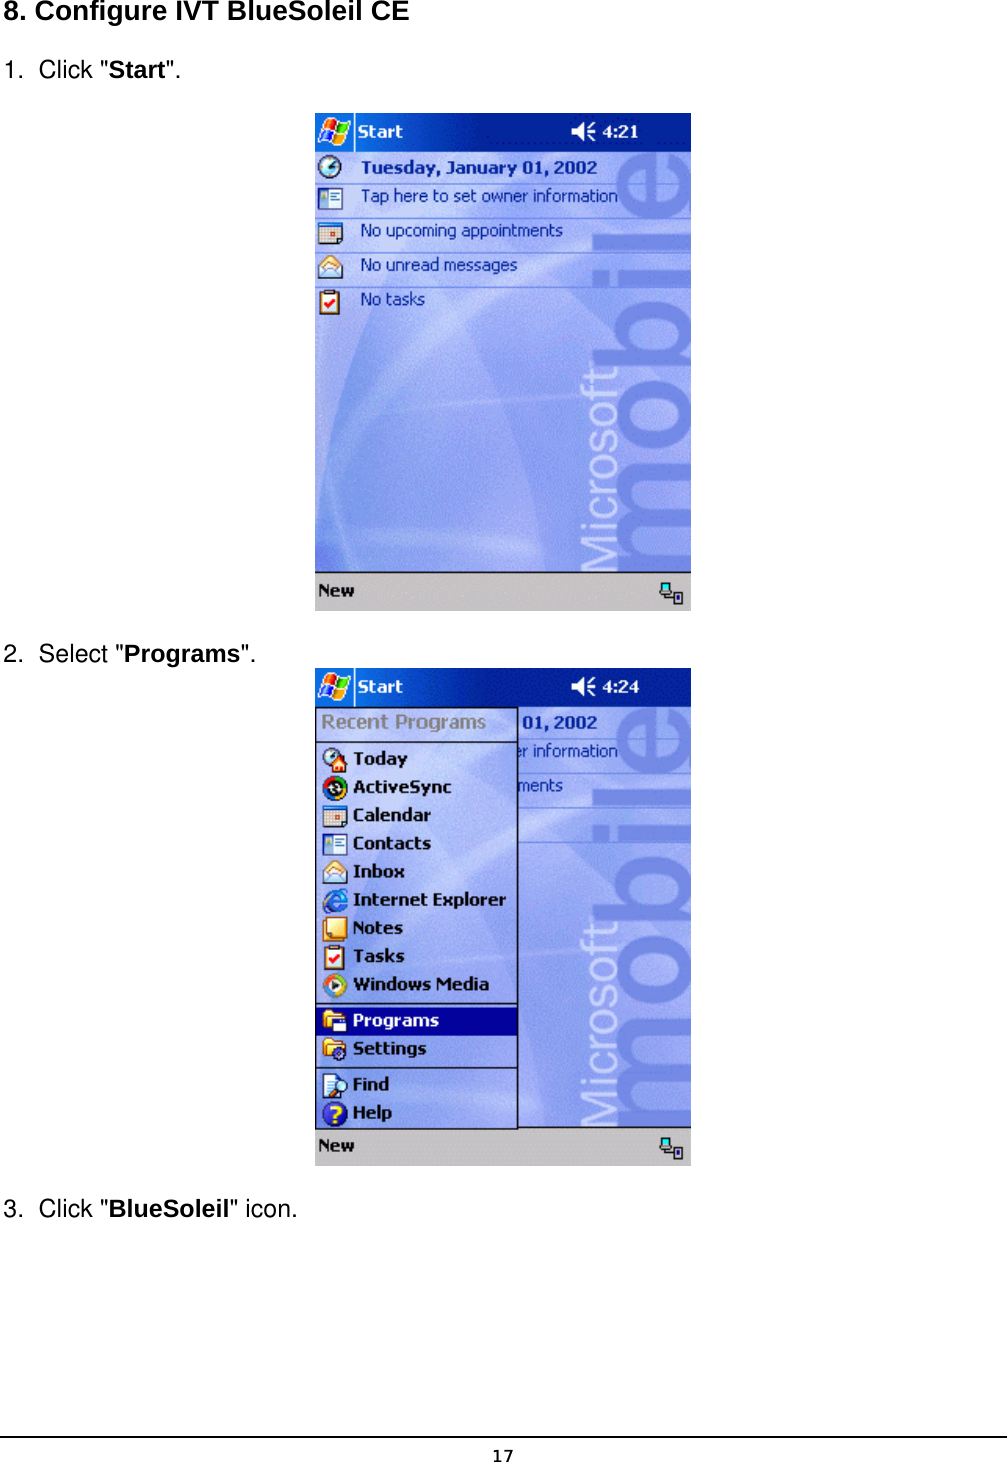   178. Configure IVT BlueSoleil CE 1. Click &quot;Start&quot;.  2. Select &quot;Programs&quot;.  3. Click &quot;BlueSoleil&quot; icon. 